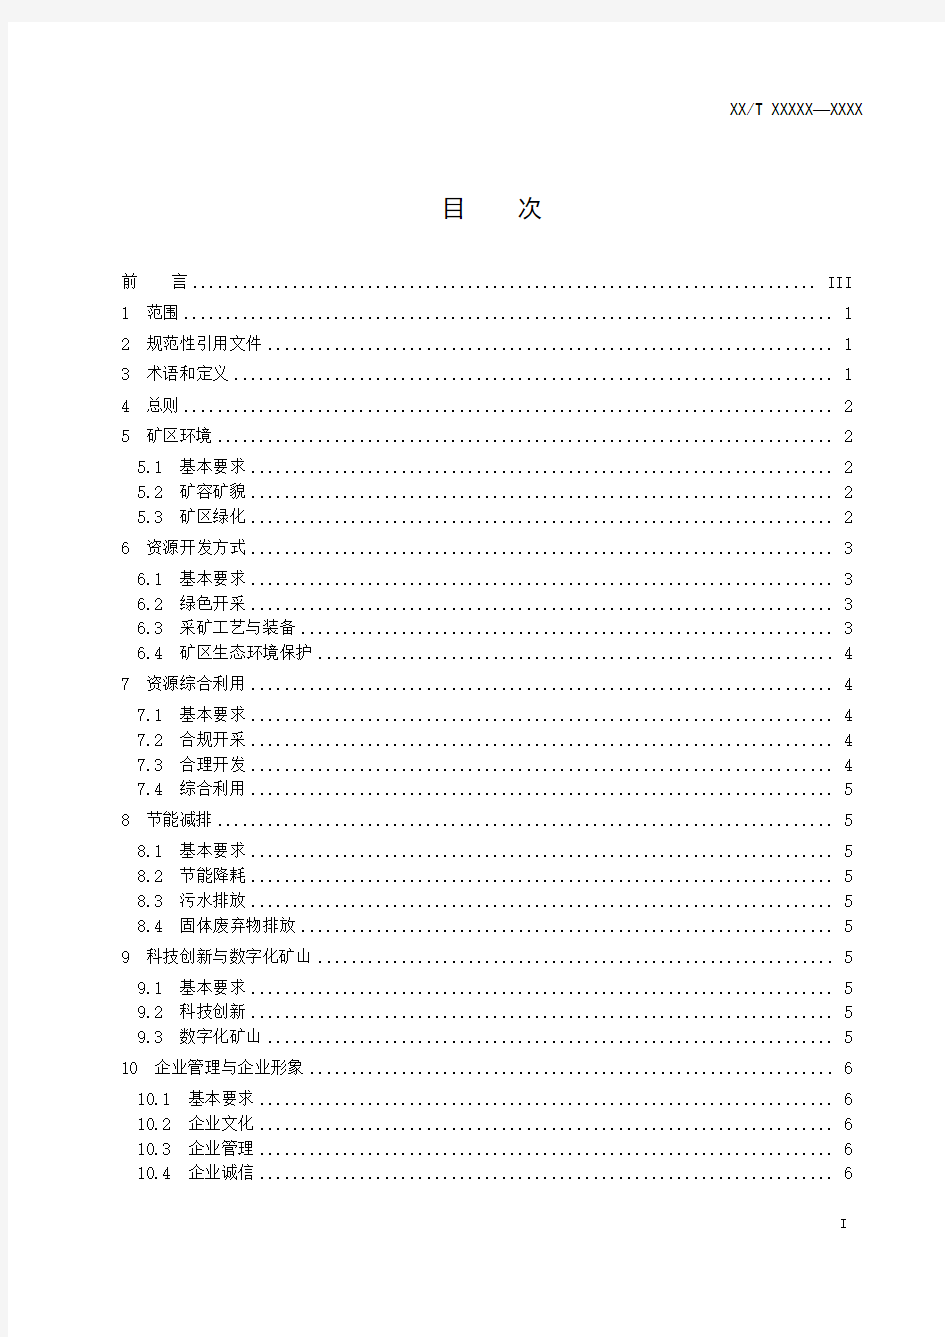 水泥灰岩绿色矿山建设规范(报批稿).pdf